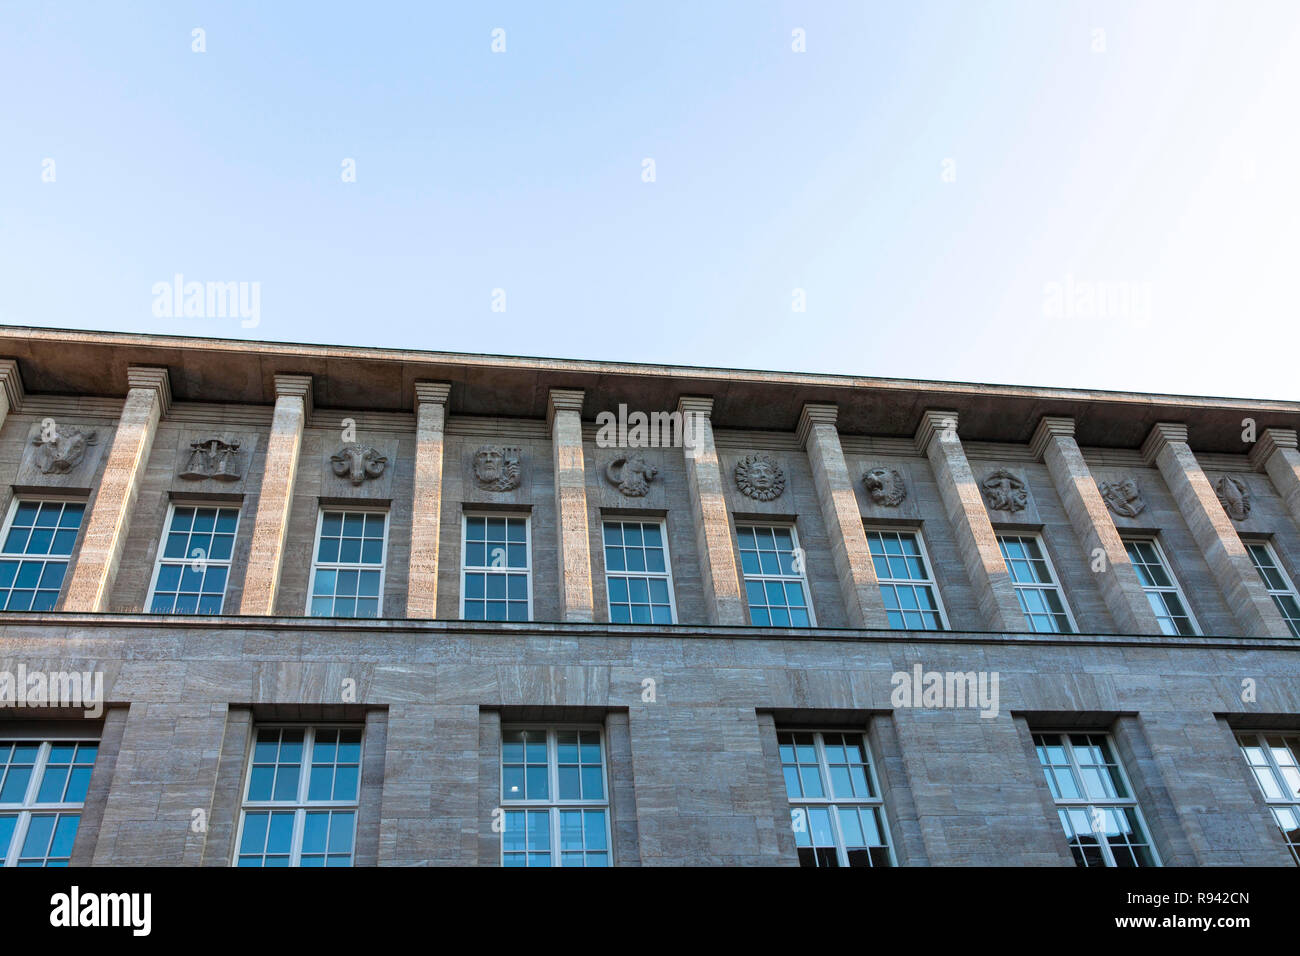 Segni zodiacali su una facciata di un edificio per uffici in Von-Werth Street nel quartiere frisone, Colonia, Germania. Sternzeichen un einem Buerogebaeude Foto Stock